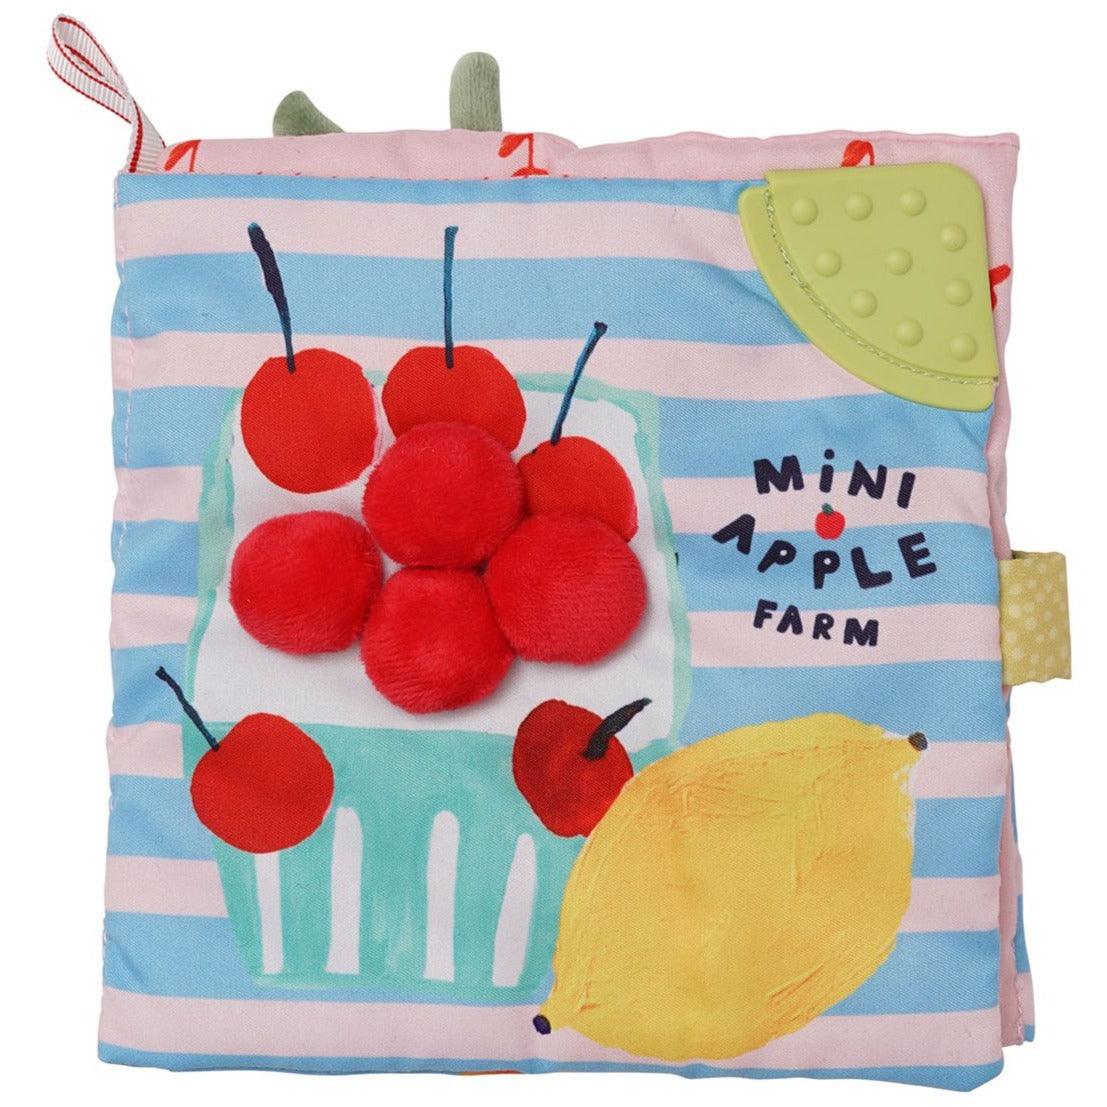 Manhattan Toy: miękka książeczka aktywnościowa jabłuszka Apple Farm - Noski Noski